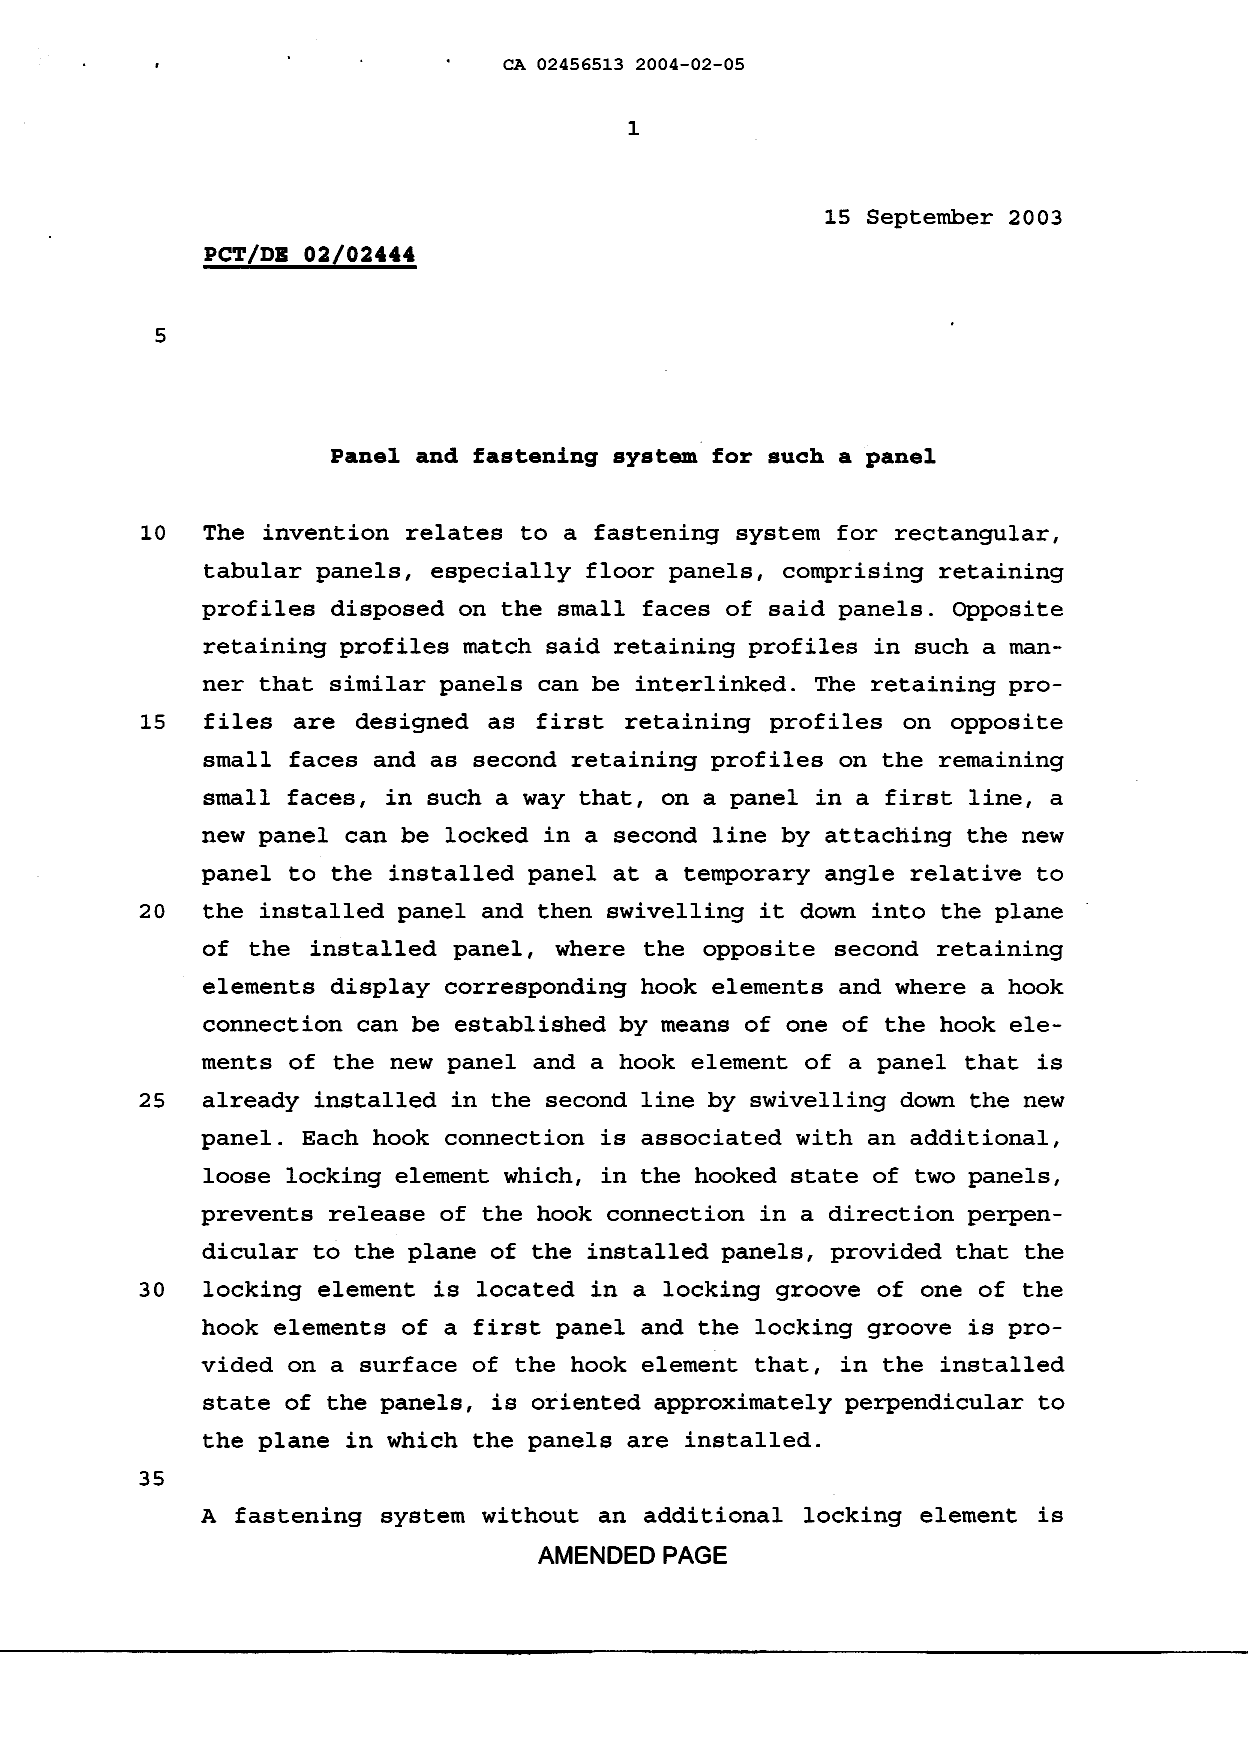 Canadian Patent Document 2456513. Description 20070911. Image 1 of 15